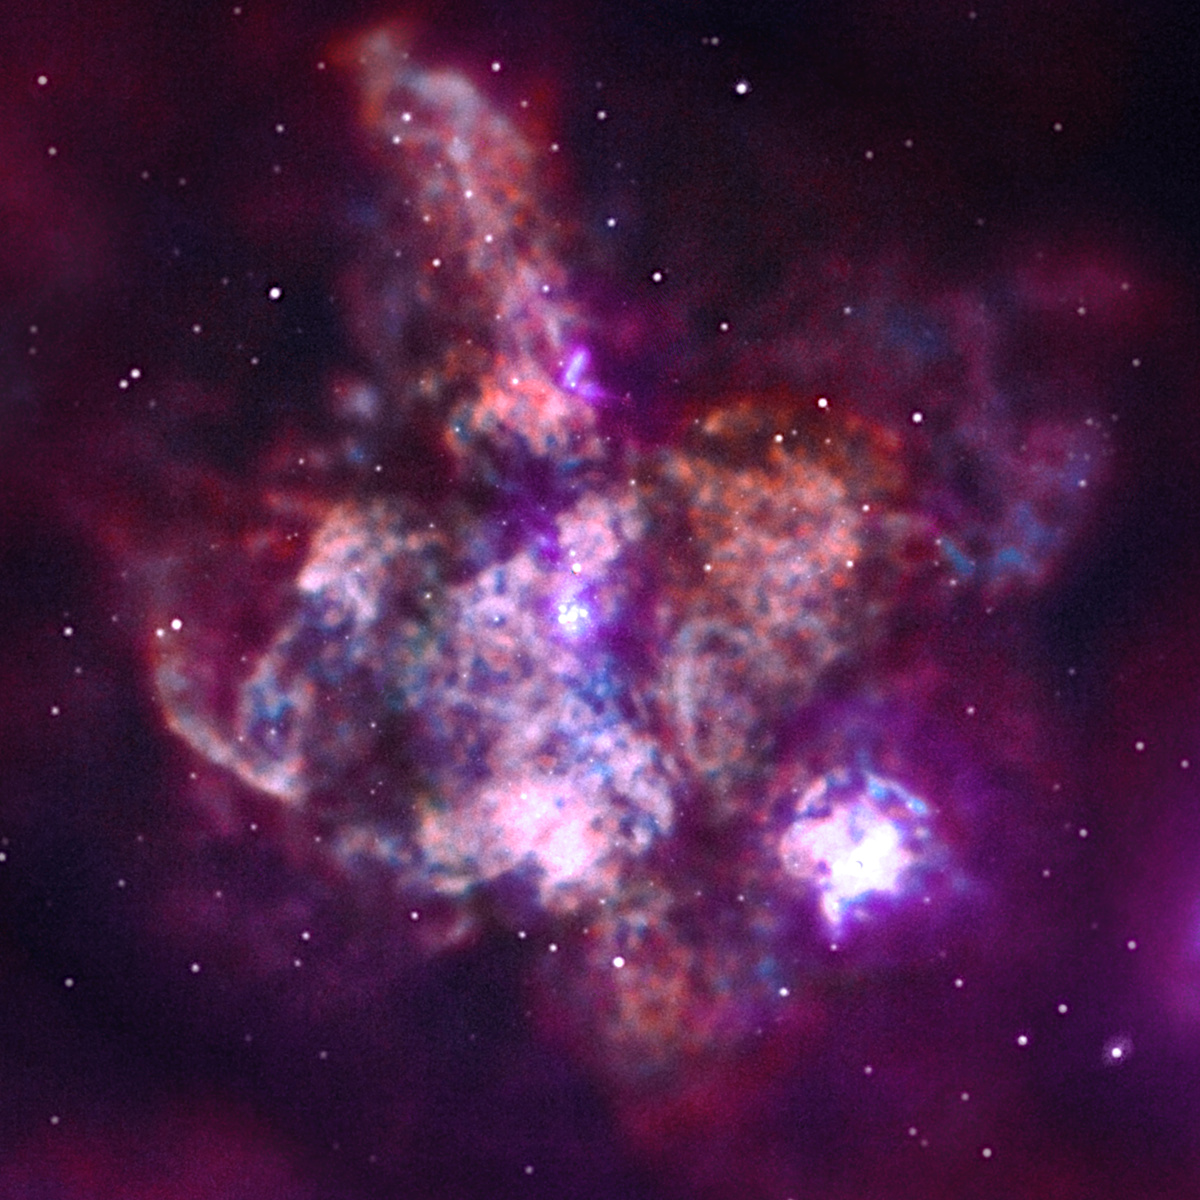 大マゼラン銀河のタランチュラ星雲 チャンドラx線望遠鏡打ち上げ周年記念画像 アストロピクス